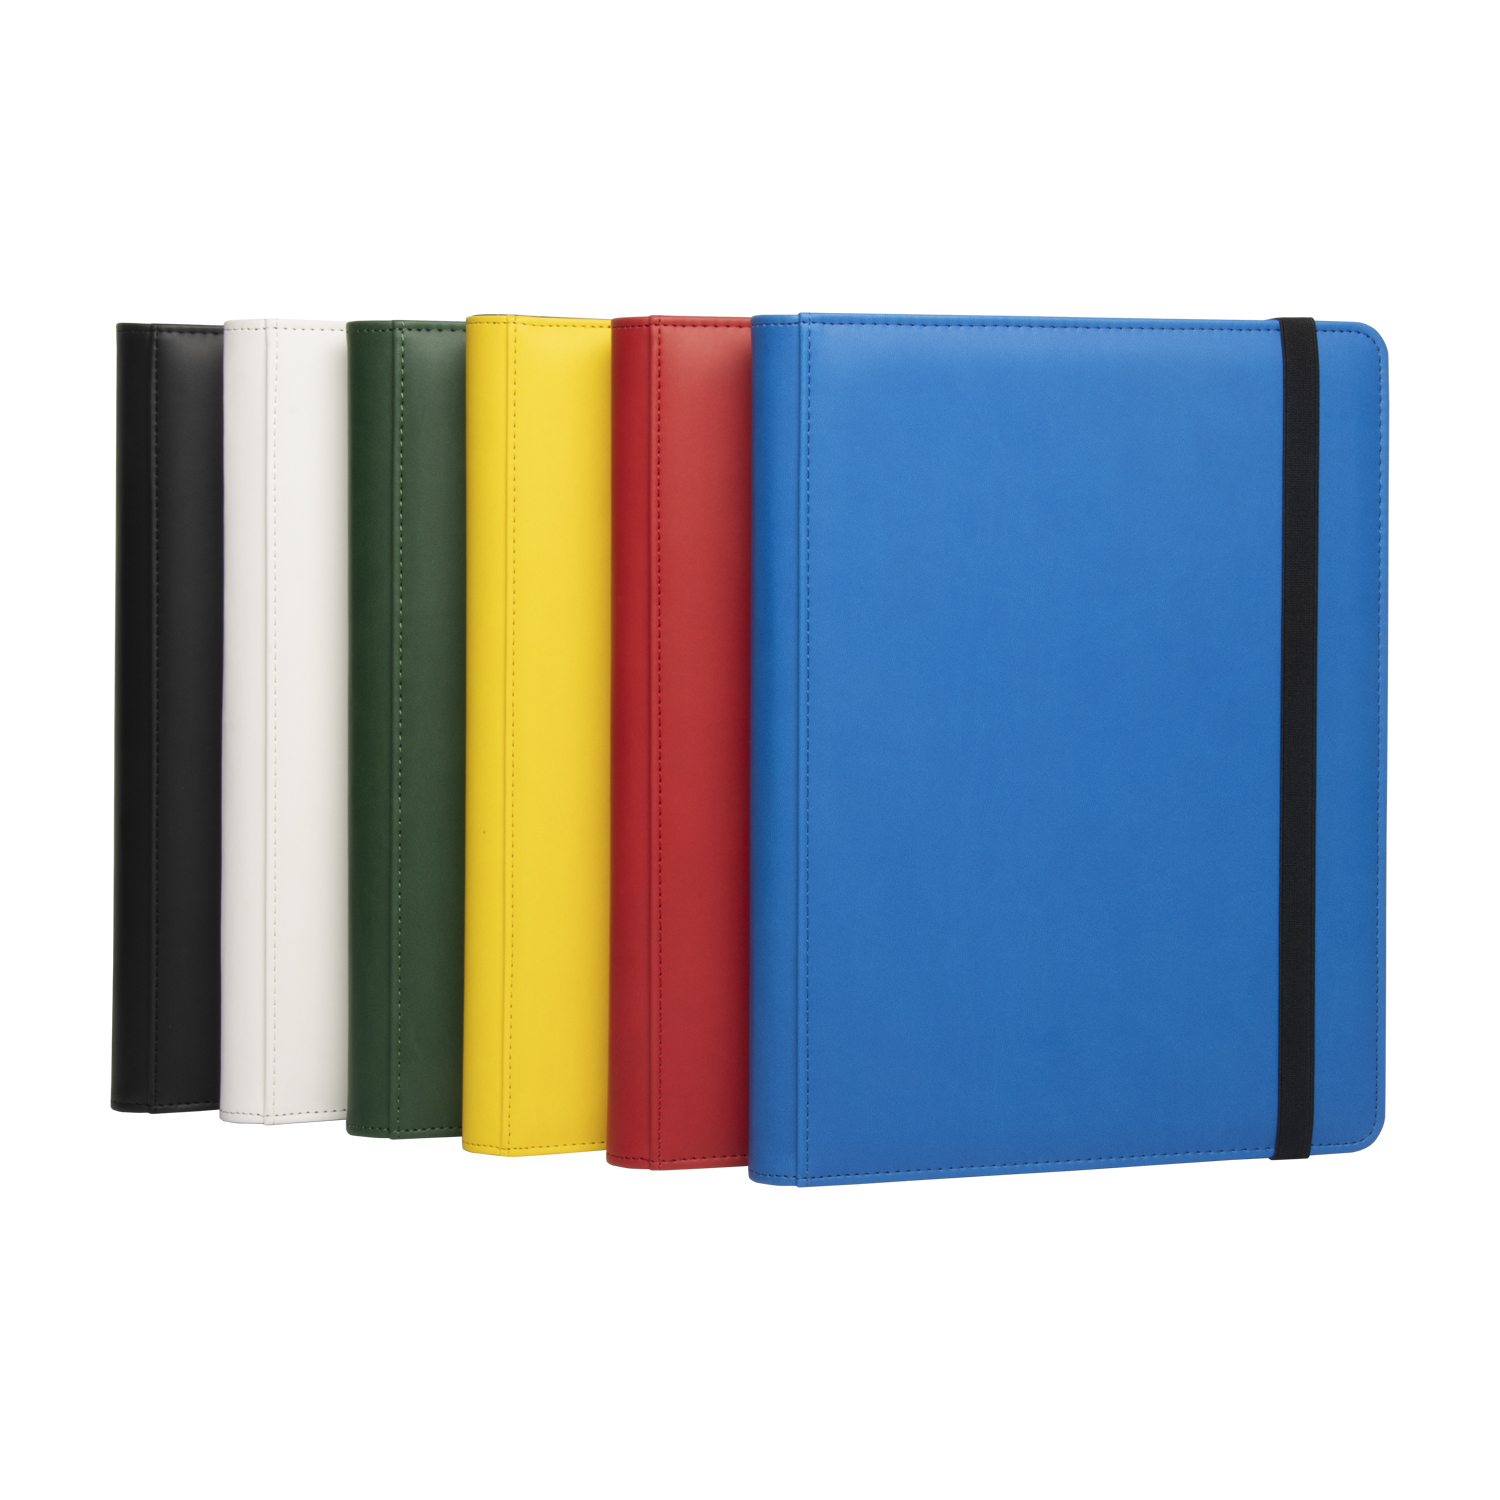 9-Pocket Premium Leather Collectors Album with Elastic Strap